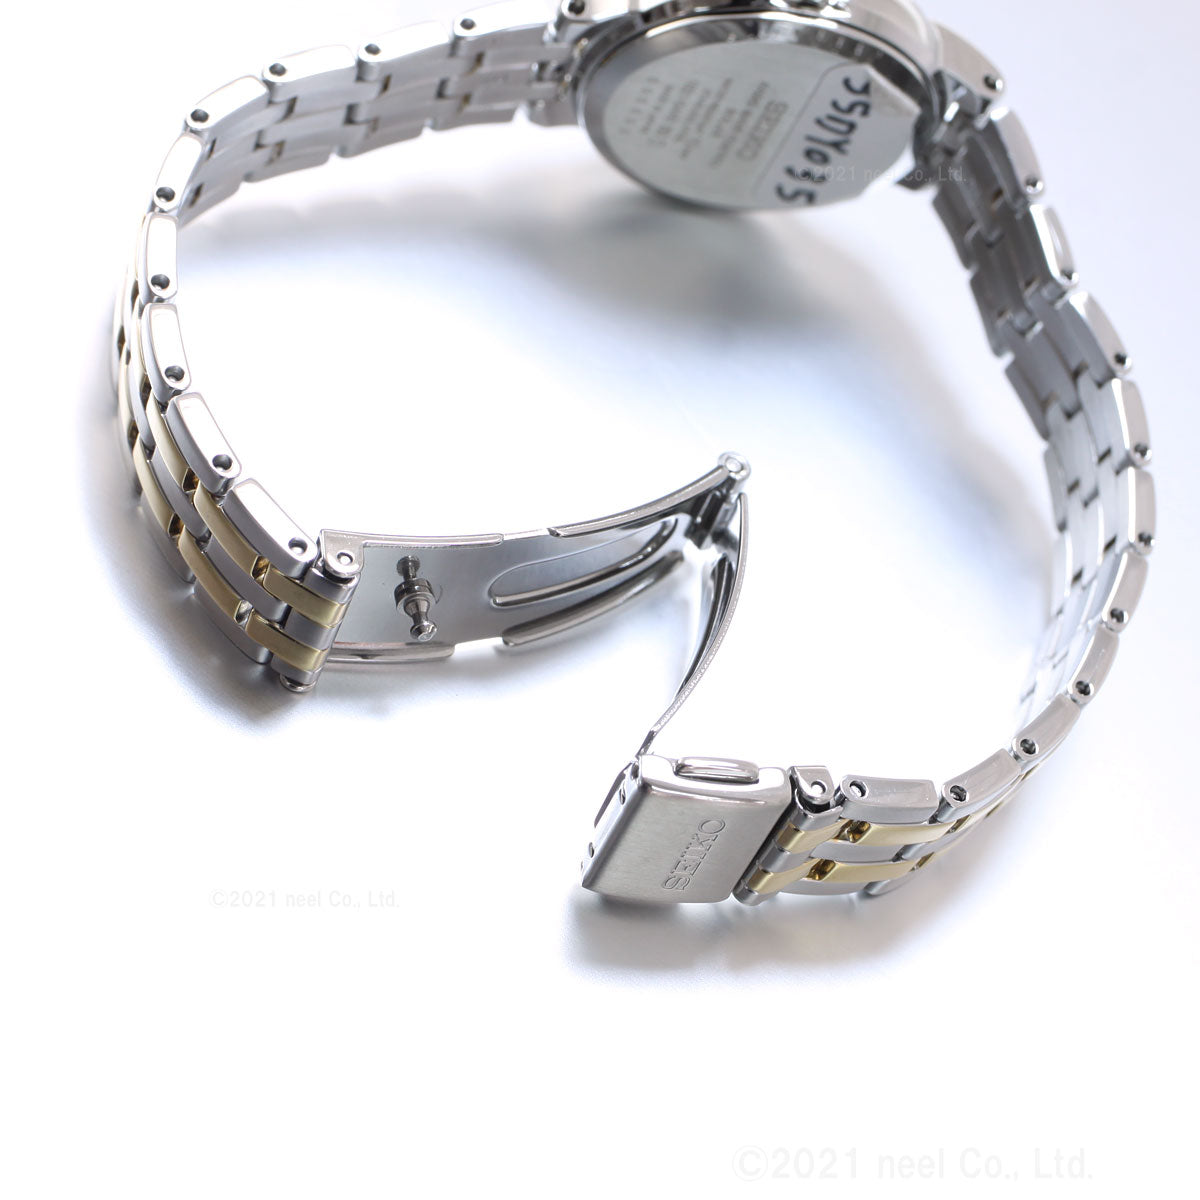 セイコー セレクション SEIKO SELECTION ソーラー 電波時計 腕時計 メンズ レディース ペアモデル SBTM285 SSDY035